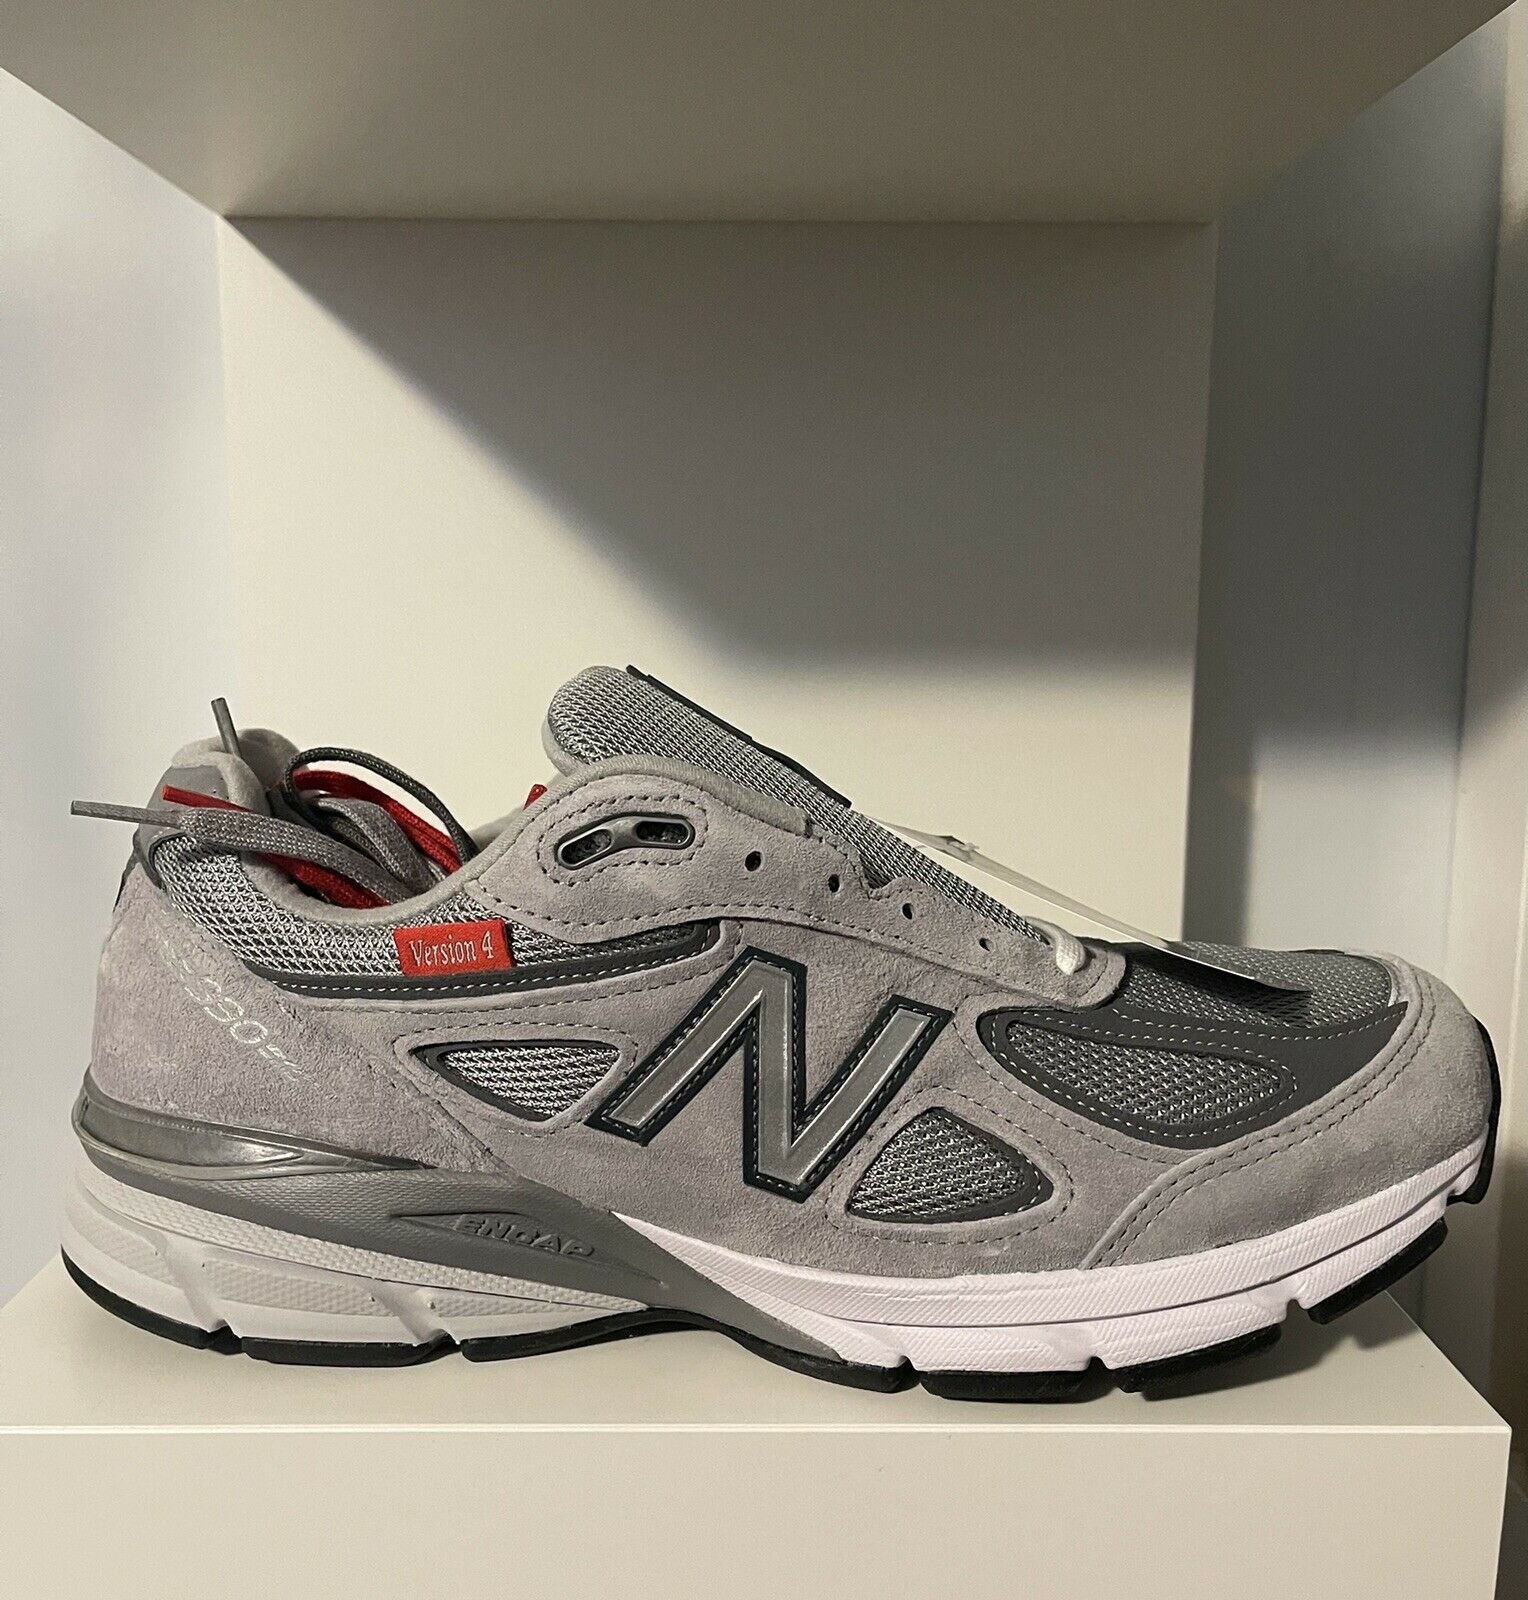 NEW BALANCE 990v4 Version 4 Grey Sneakers - Men's Size 10.5 (M990VS4)